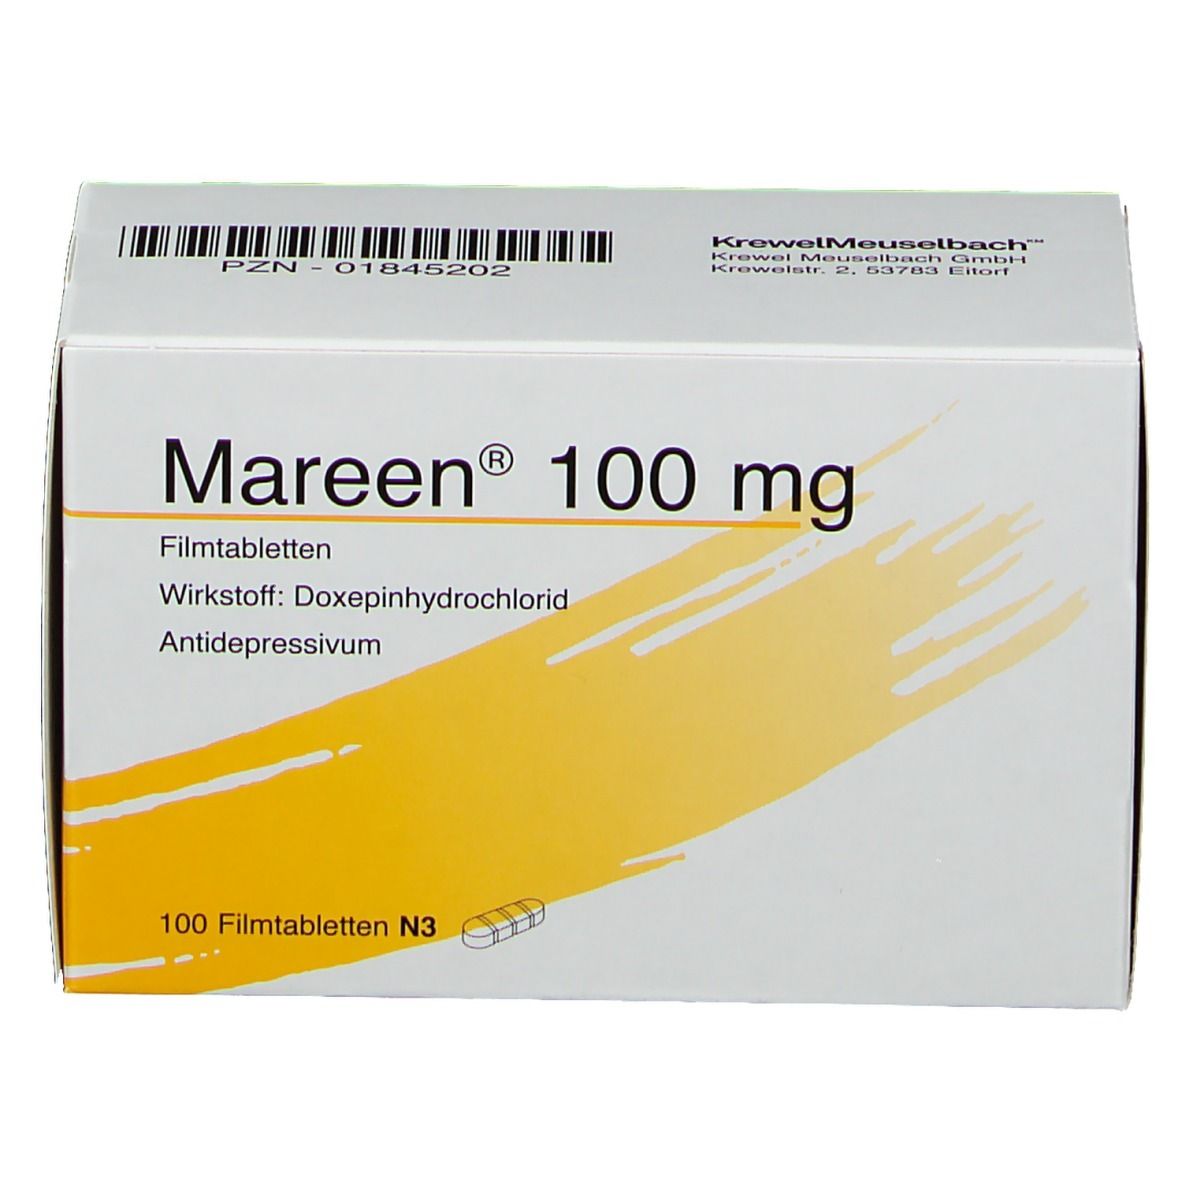 Mareen® 100 mg